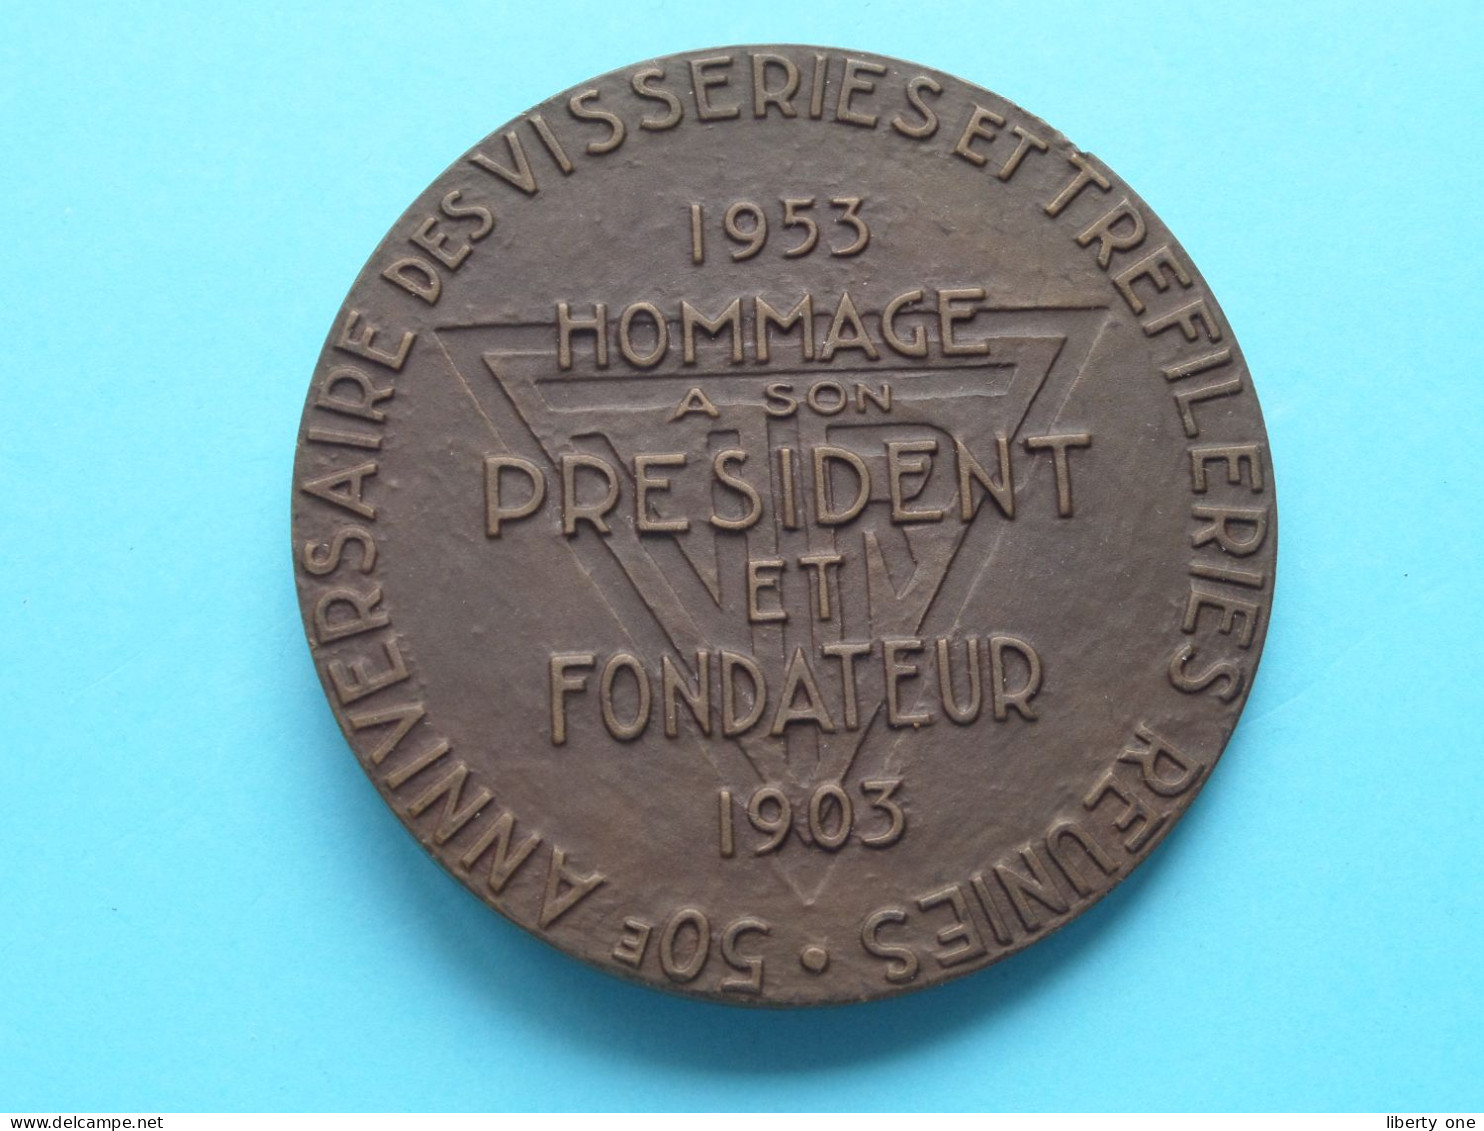 ALBERT FERON - 1953 Hommage à Son President Et FONDATEUR 1903 / 50e Anni ( See Voir SCANS ) 7 Cm. / 170 Gram (Cliquet) - Unternehmen